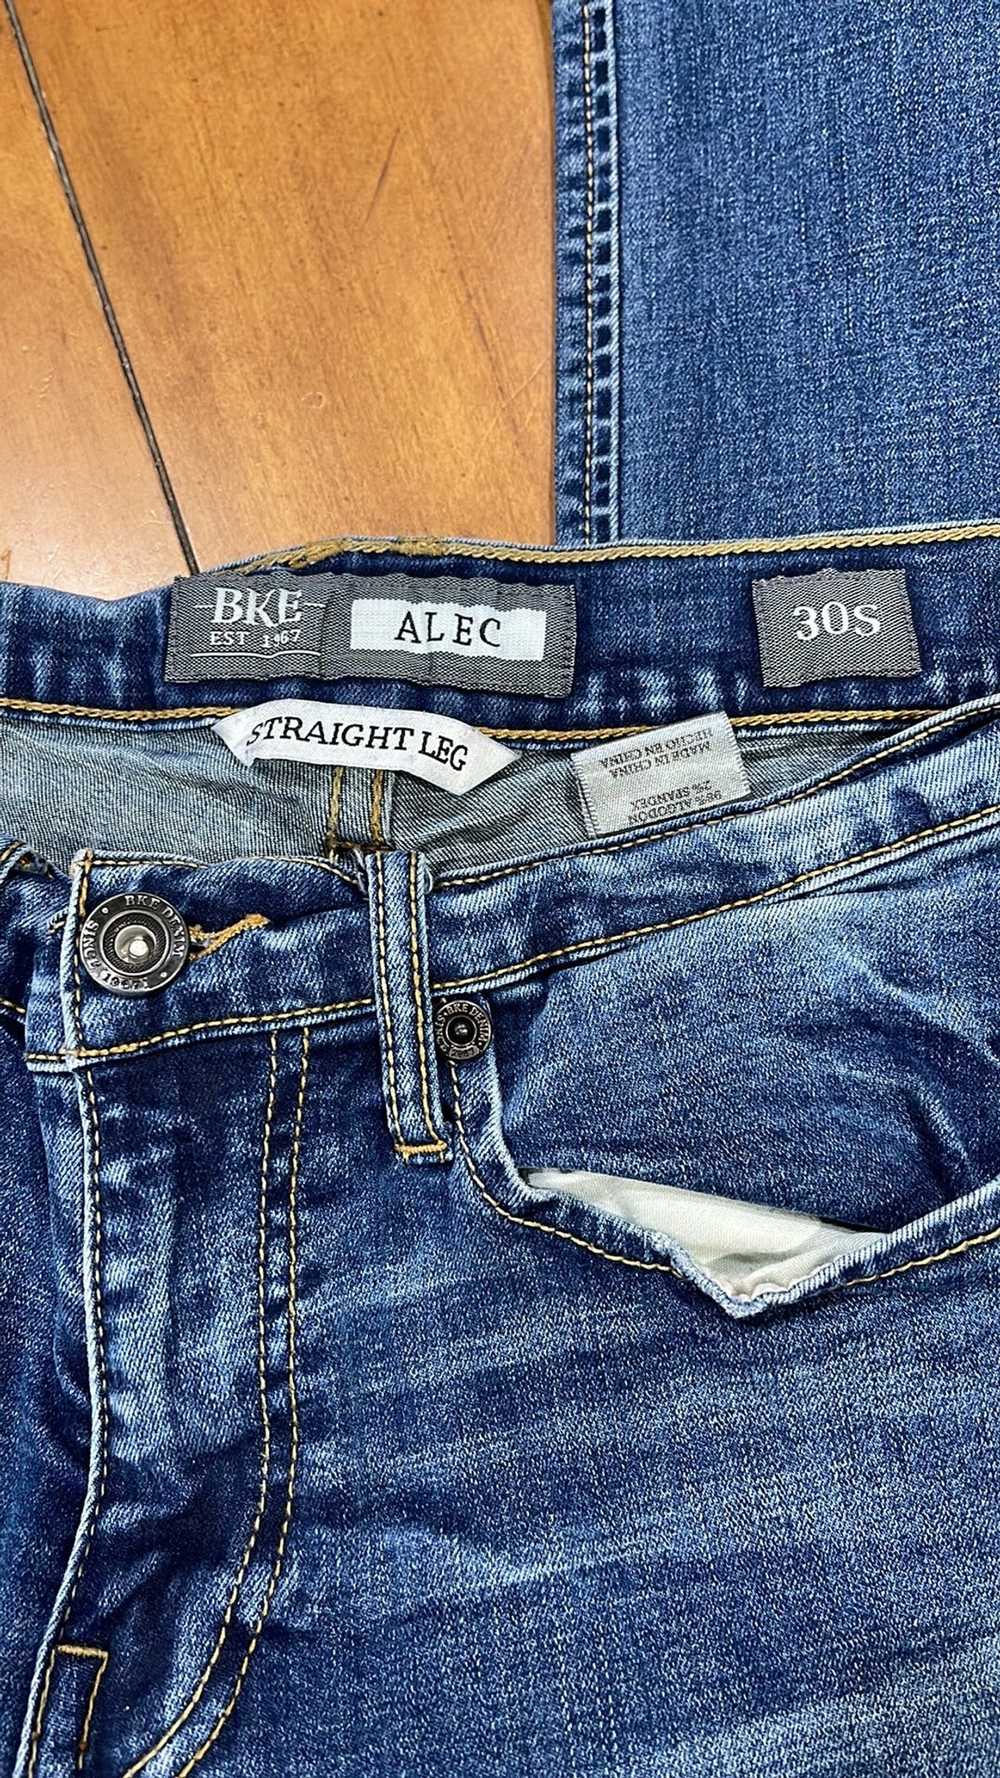 Bke Bke Alec Straight 30s Denim Jeans - image 5